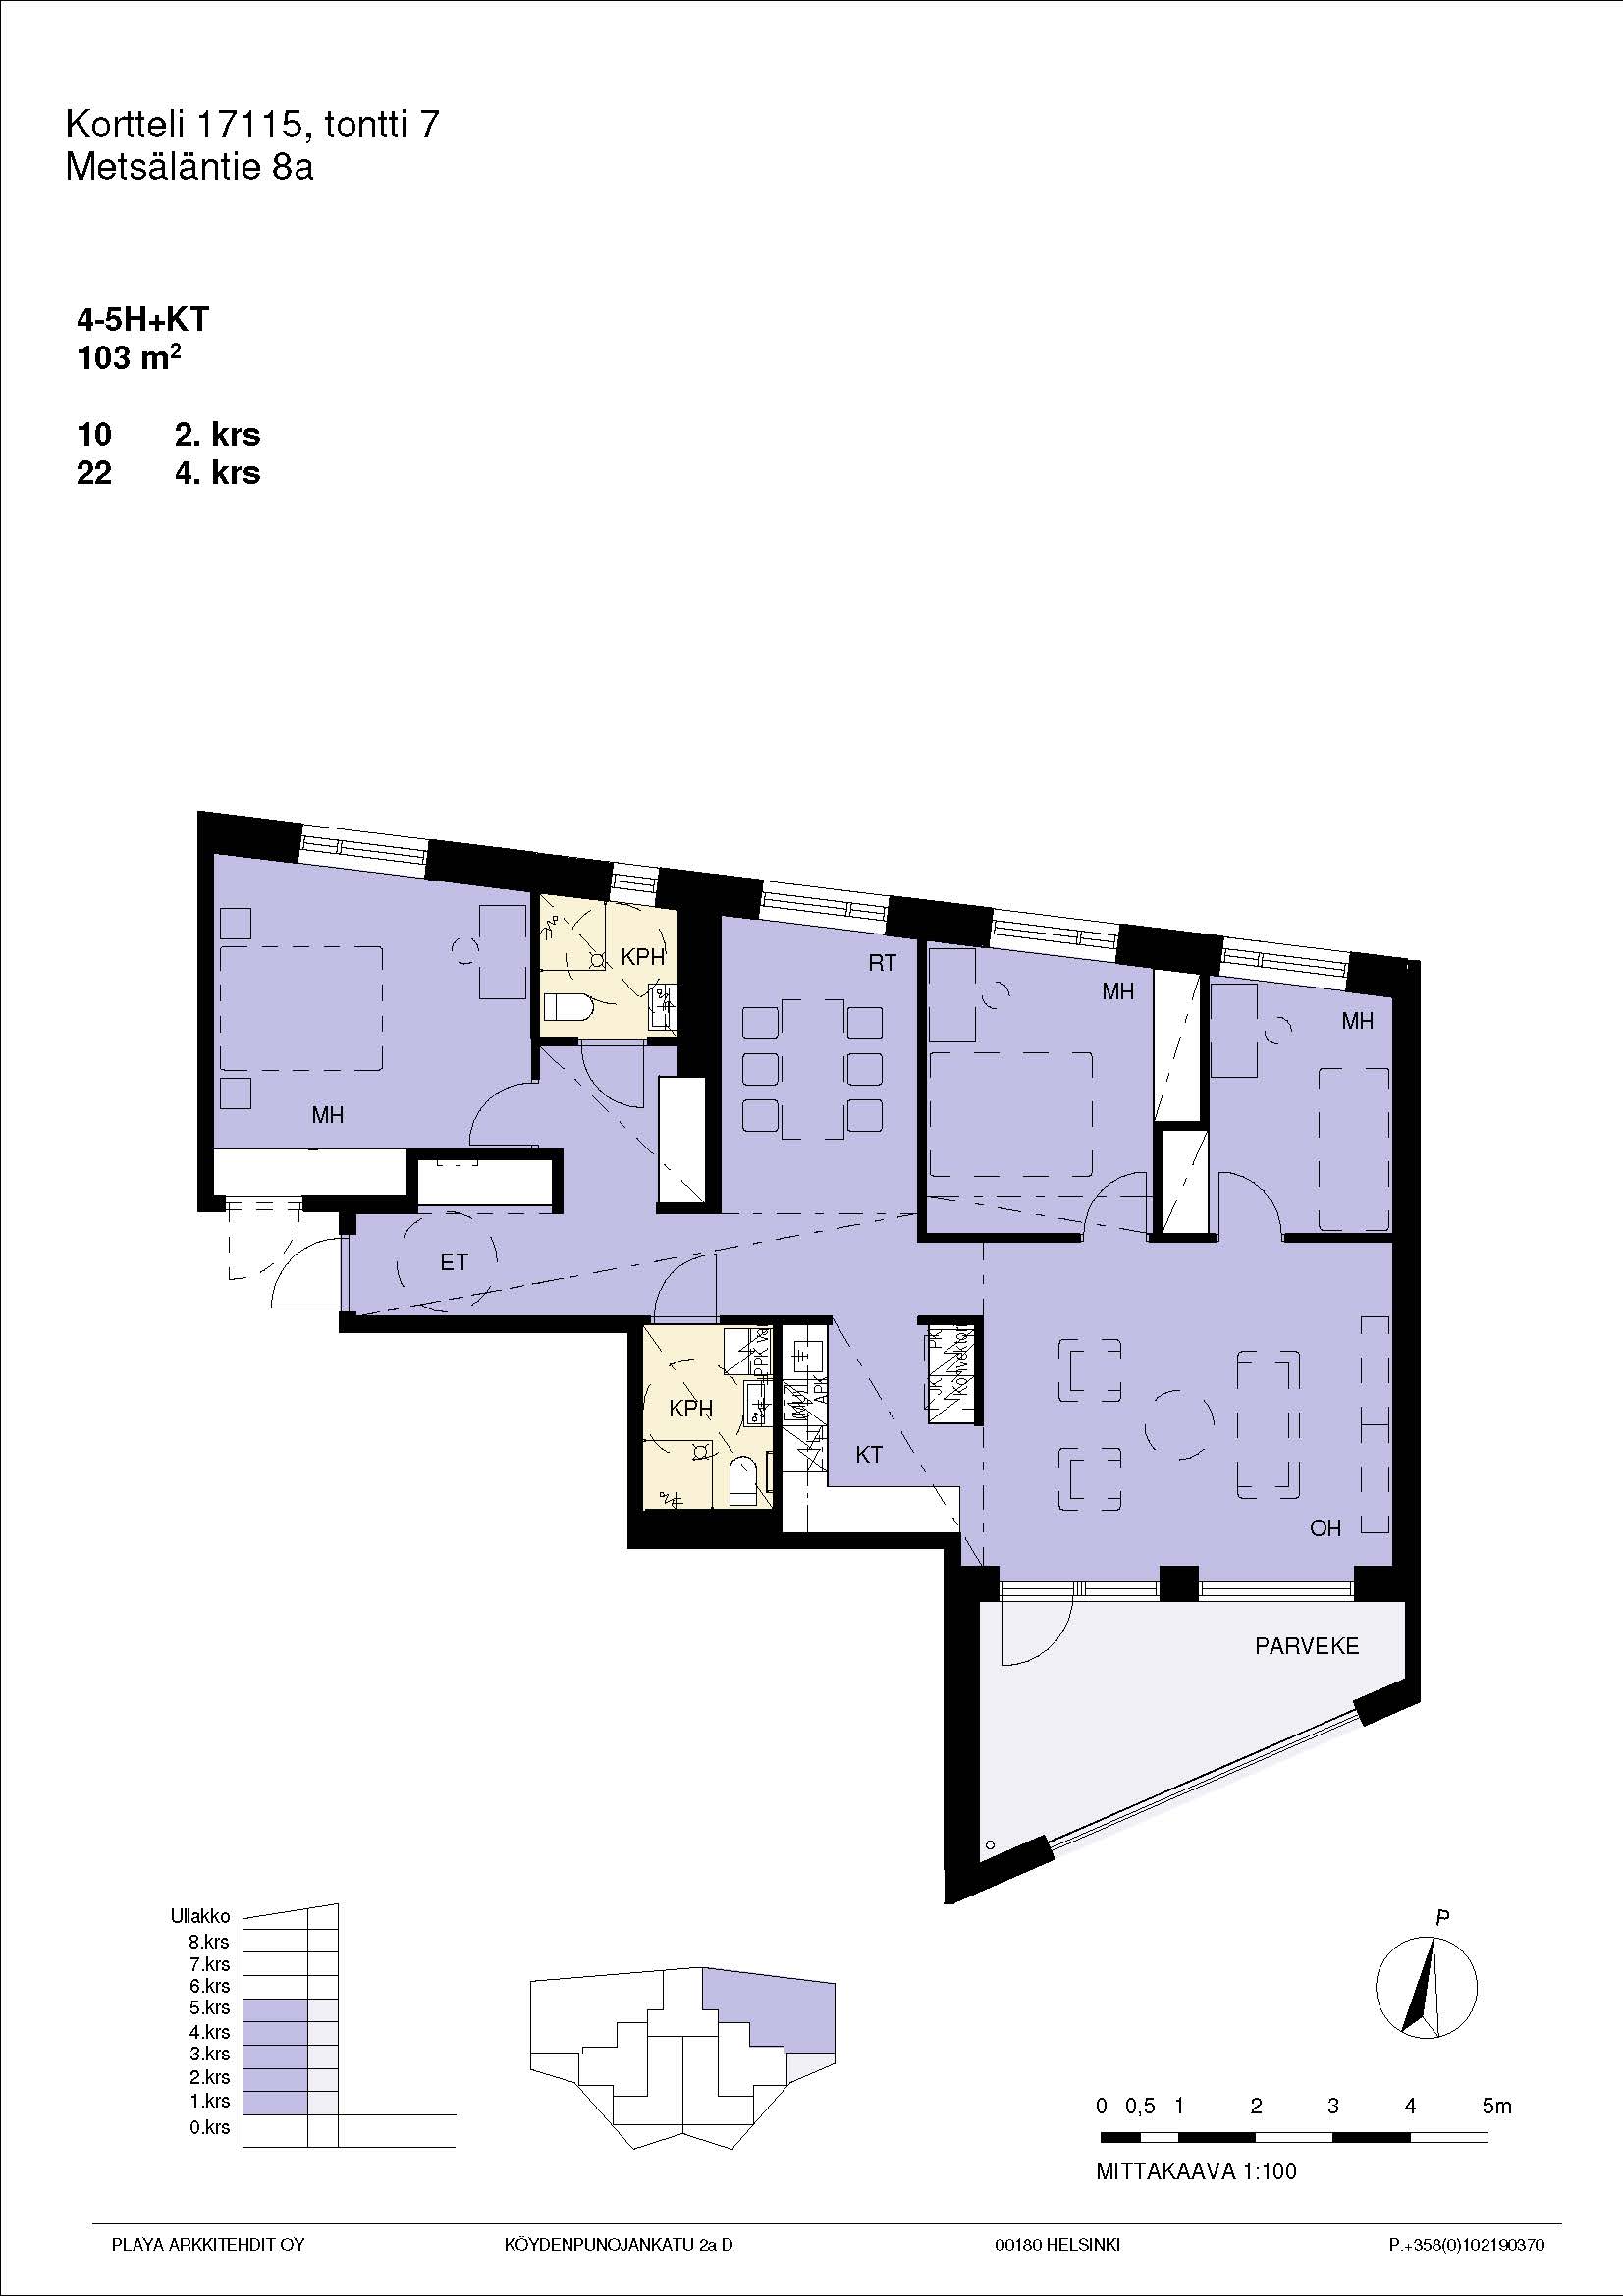 Pohjakuva A22, 4-5h+kt yhtenäinen suuri asunto 103 m2